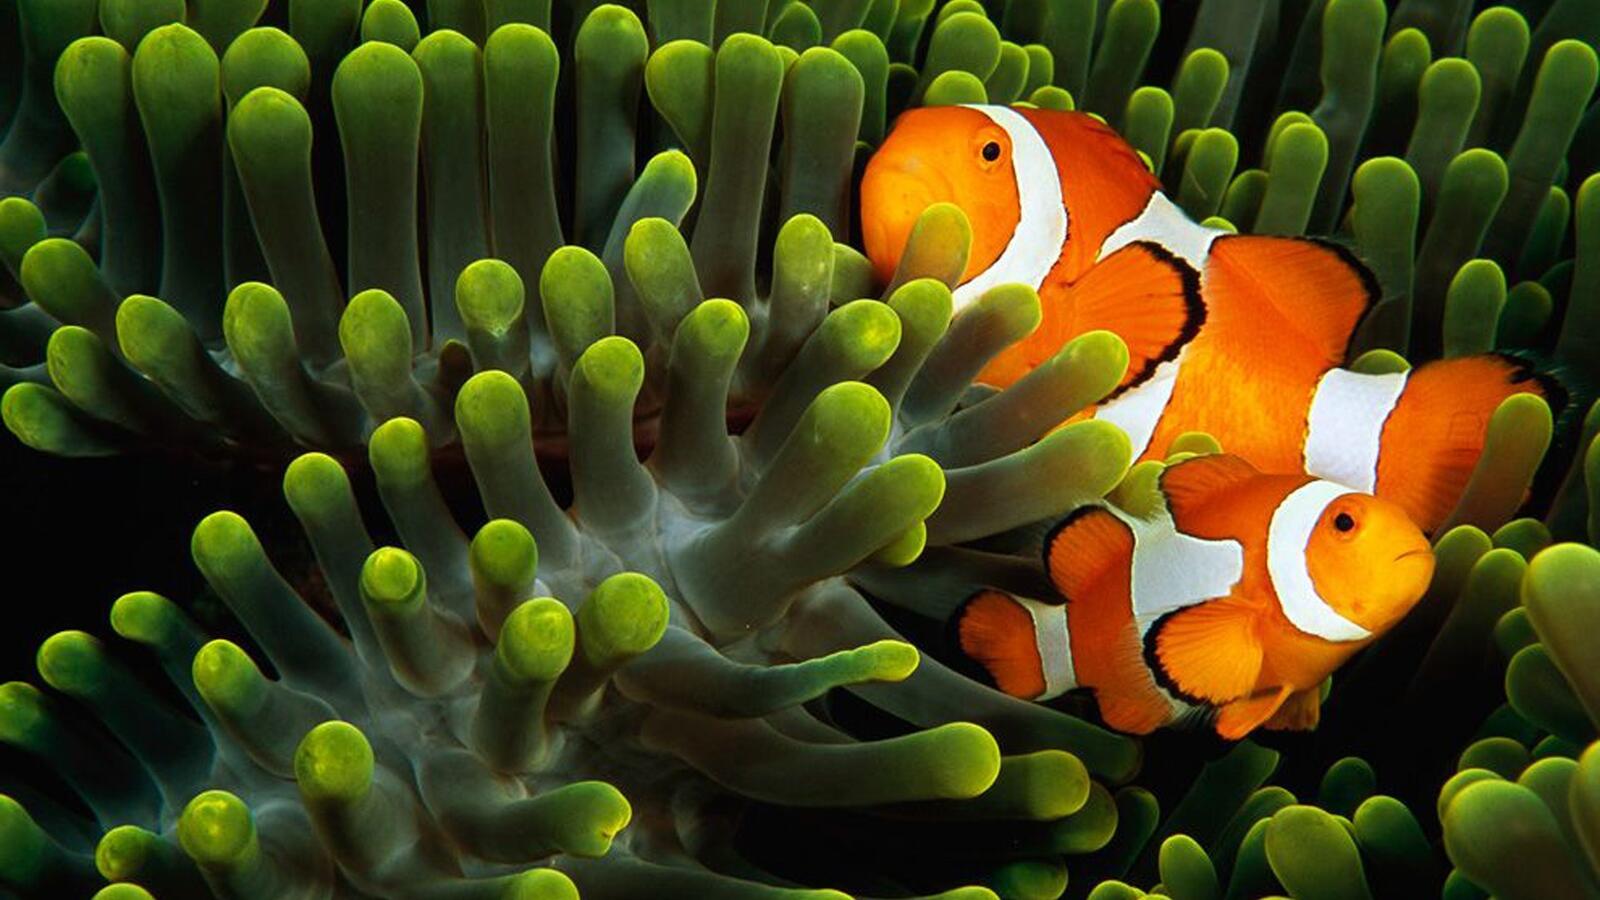 Wallpapers animals fish underwater on the desktop